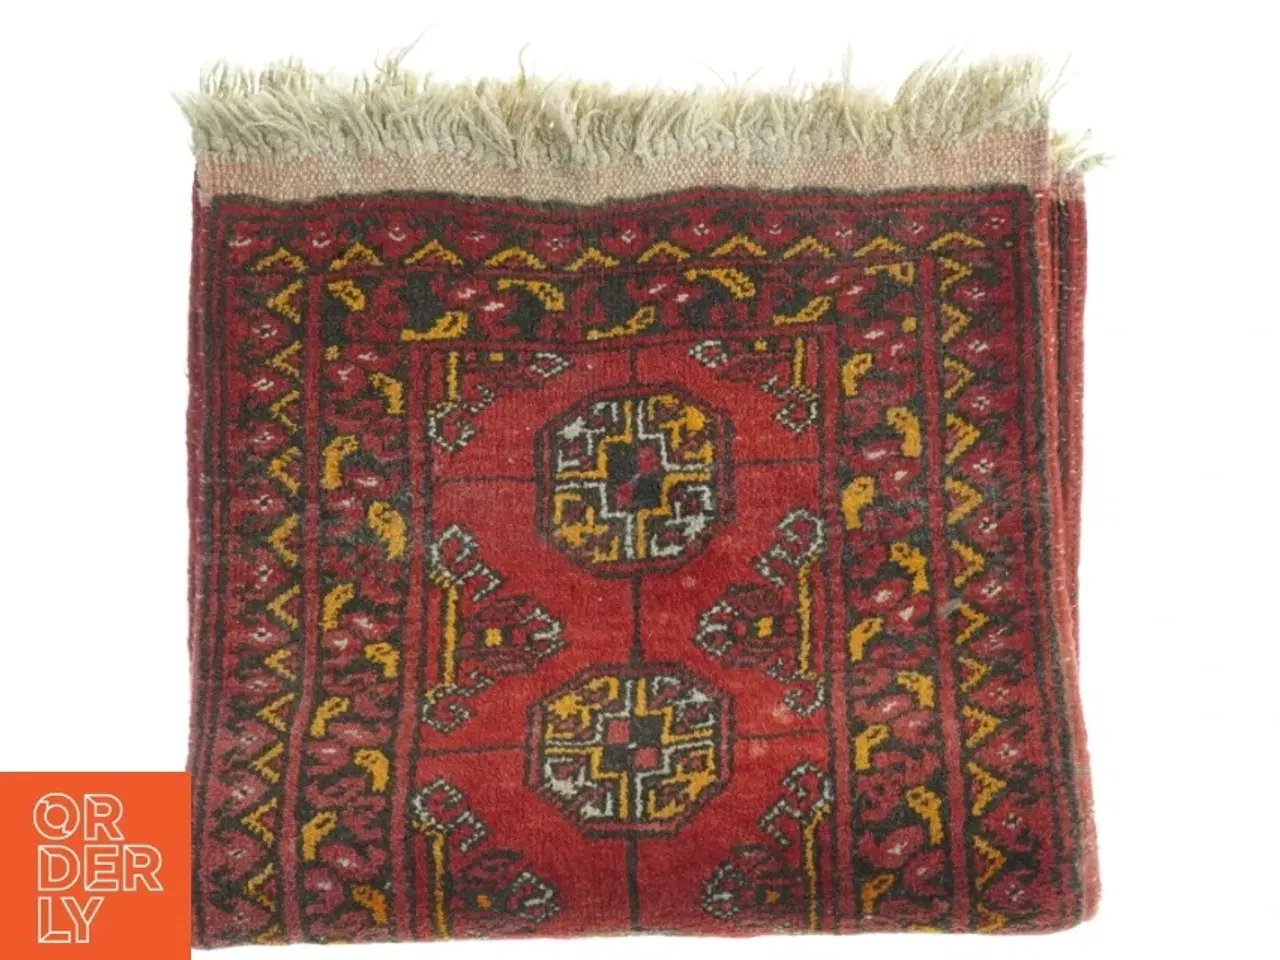 Billede 1 - Orientalsk tæppe (str. 105 x 55 cm)